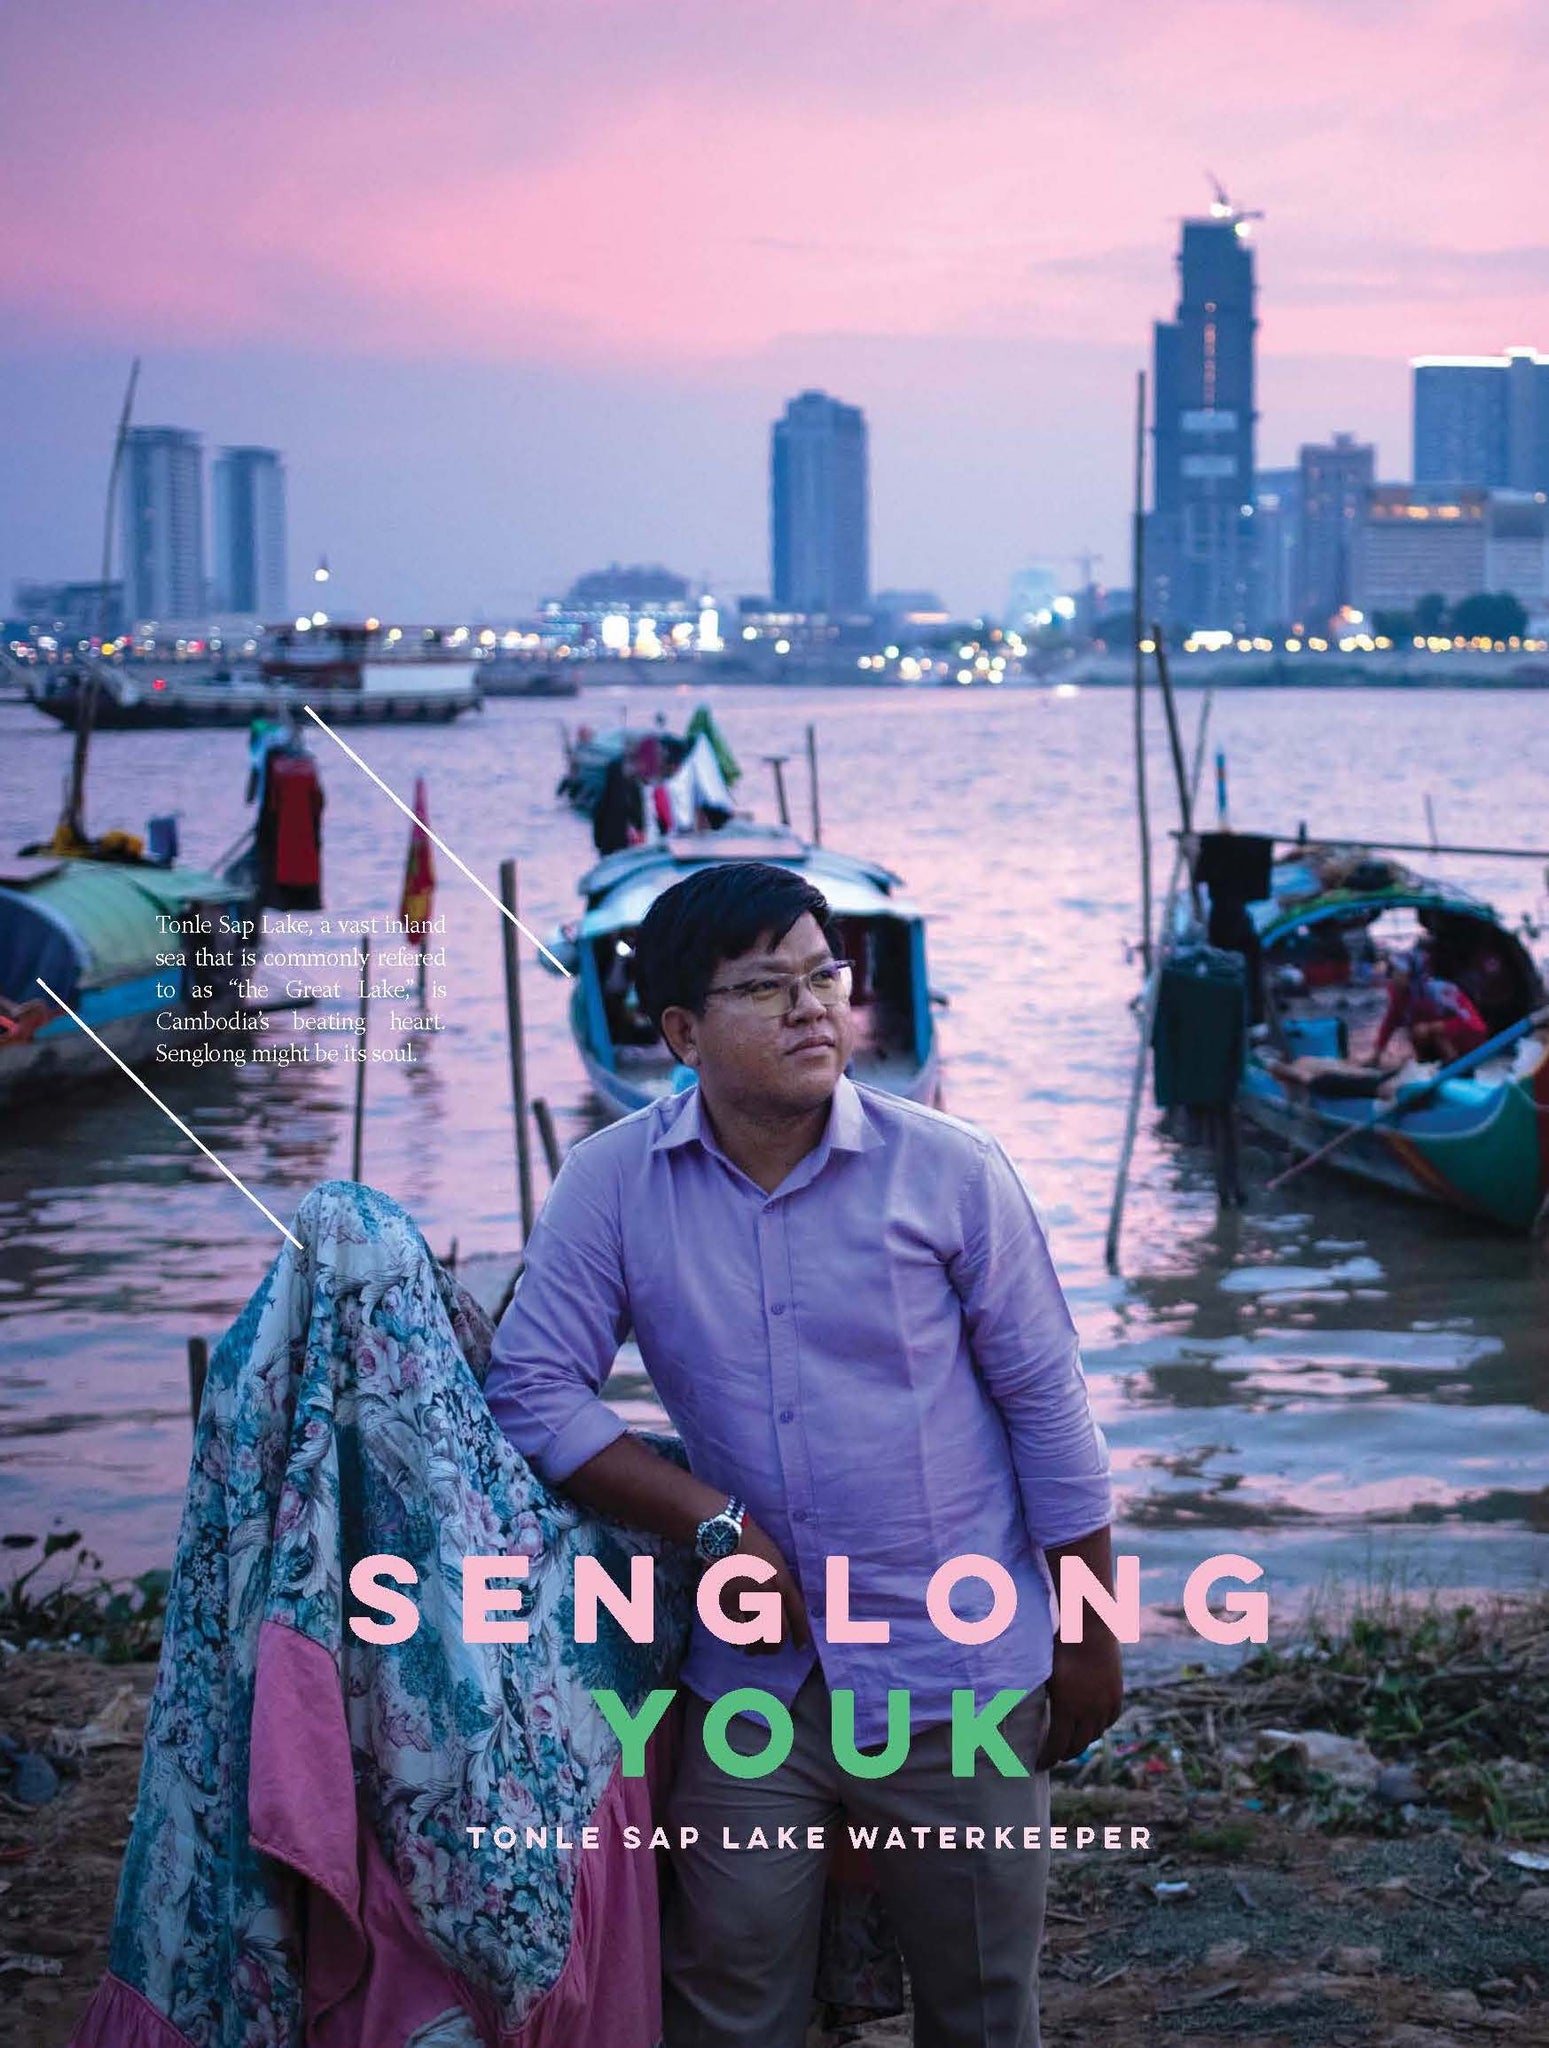 Senglong Youk, the Tonle Sap Lake Waterkeeper in Cambodia